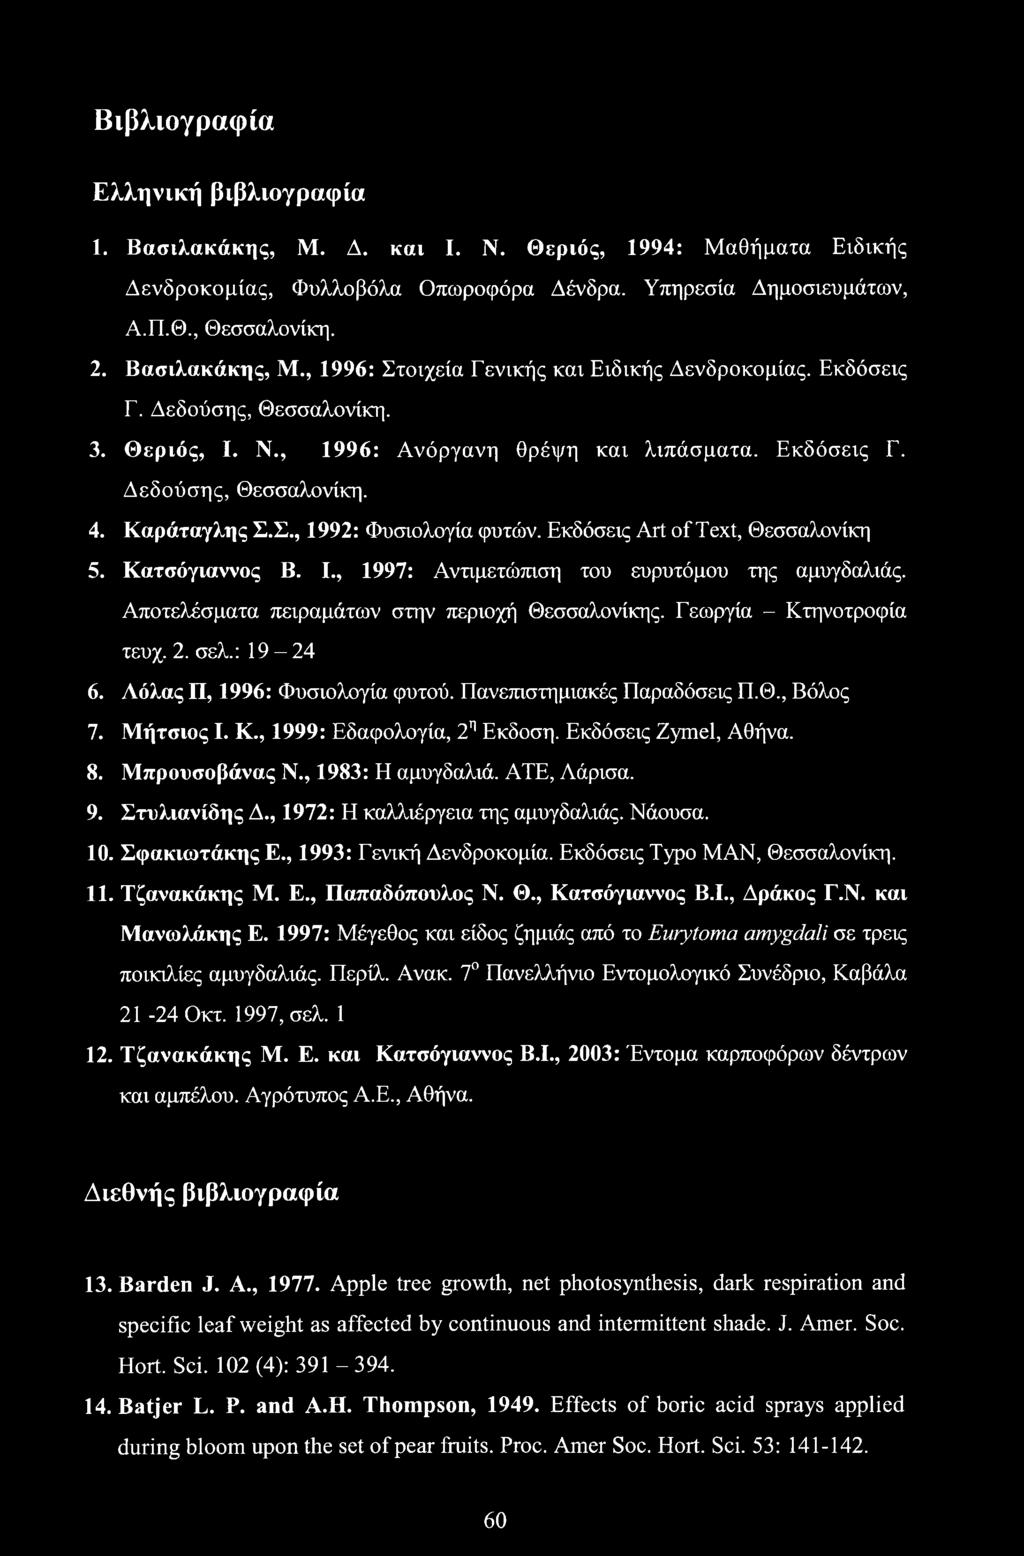 Καράταγλης Σ.Σ., 1992: Φυσιολογία φυτών. Εκδόσεις Art of Text, Θεσσαλονίκη 5. Κατσόγιαννος Β. I., 1997: Αντιμετώπιση του ευρυτόμου της αμυγδαλιάς. Αποτελέσματα πειραμάτων στην περιοχή Θεσσαλονίκης.